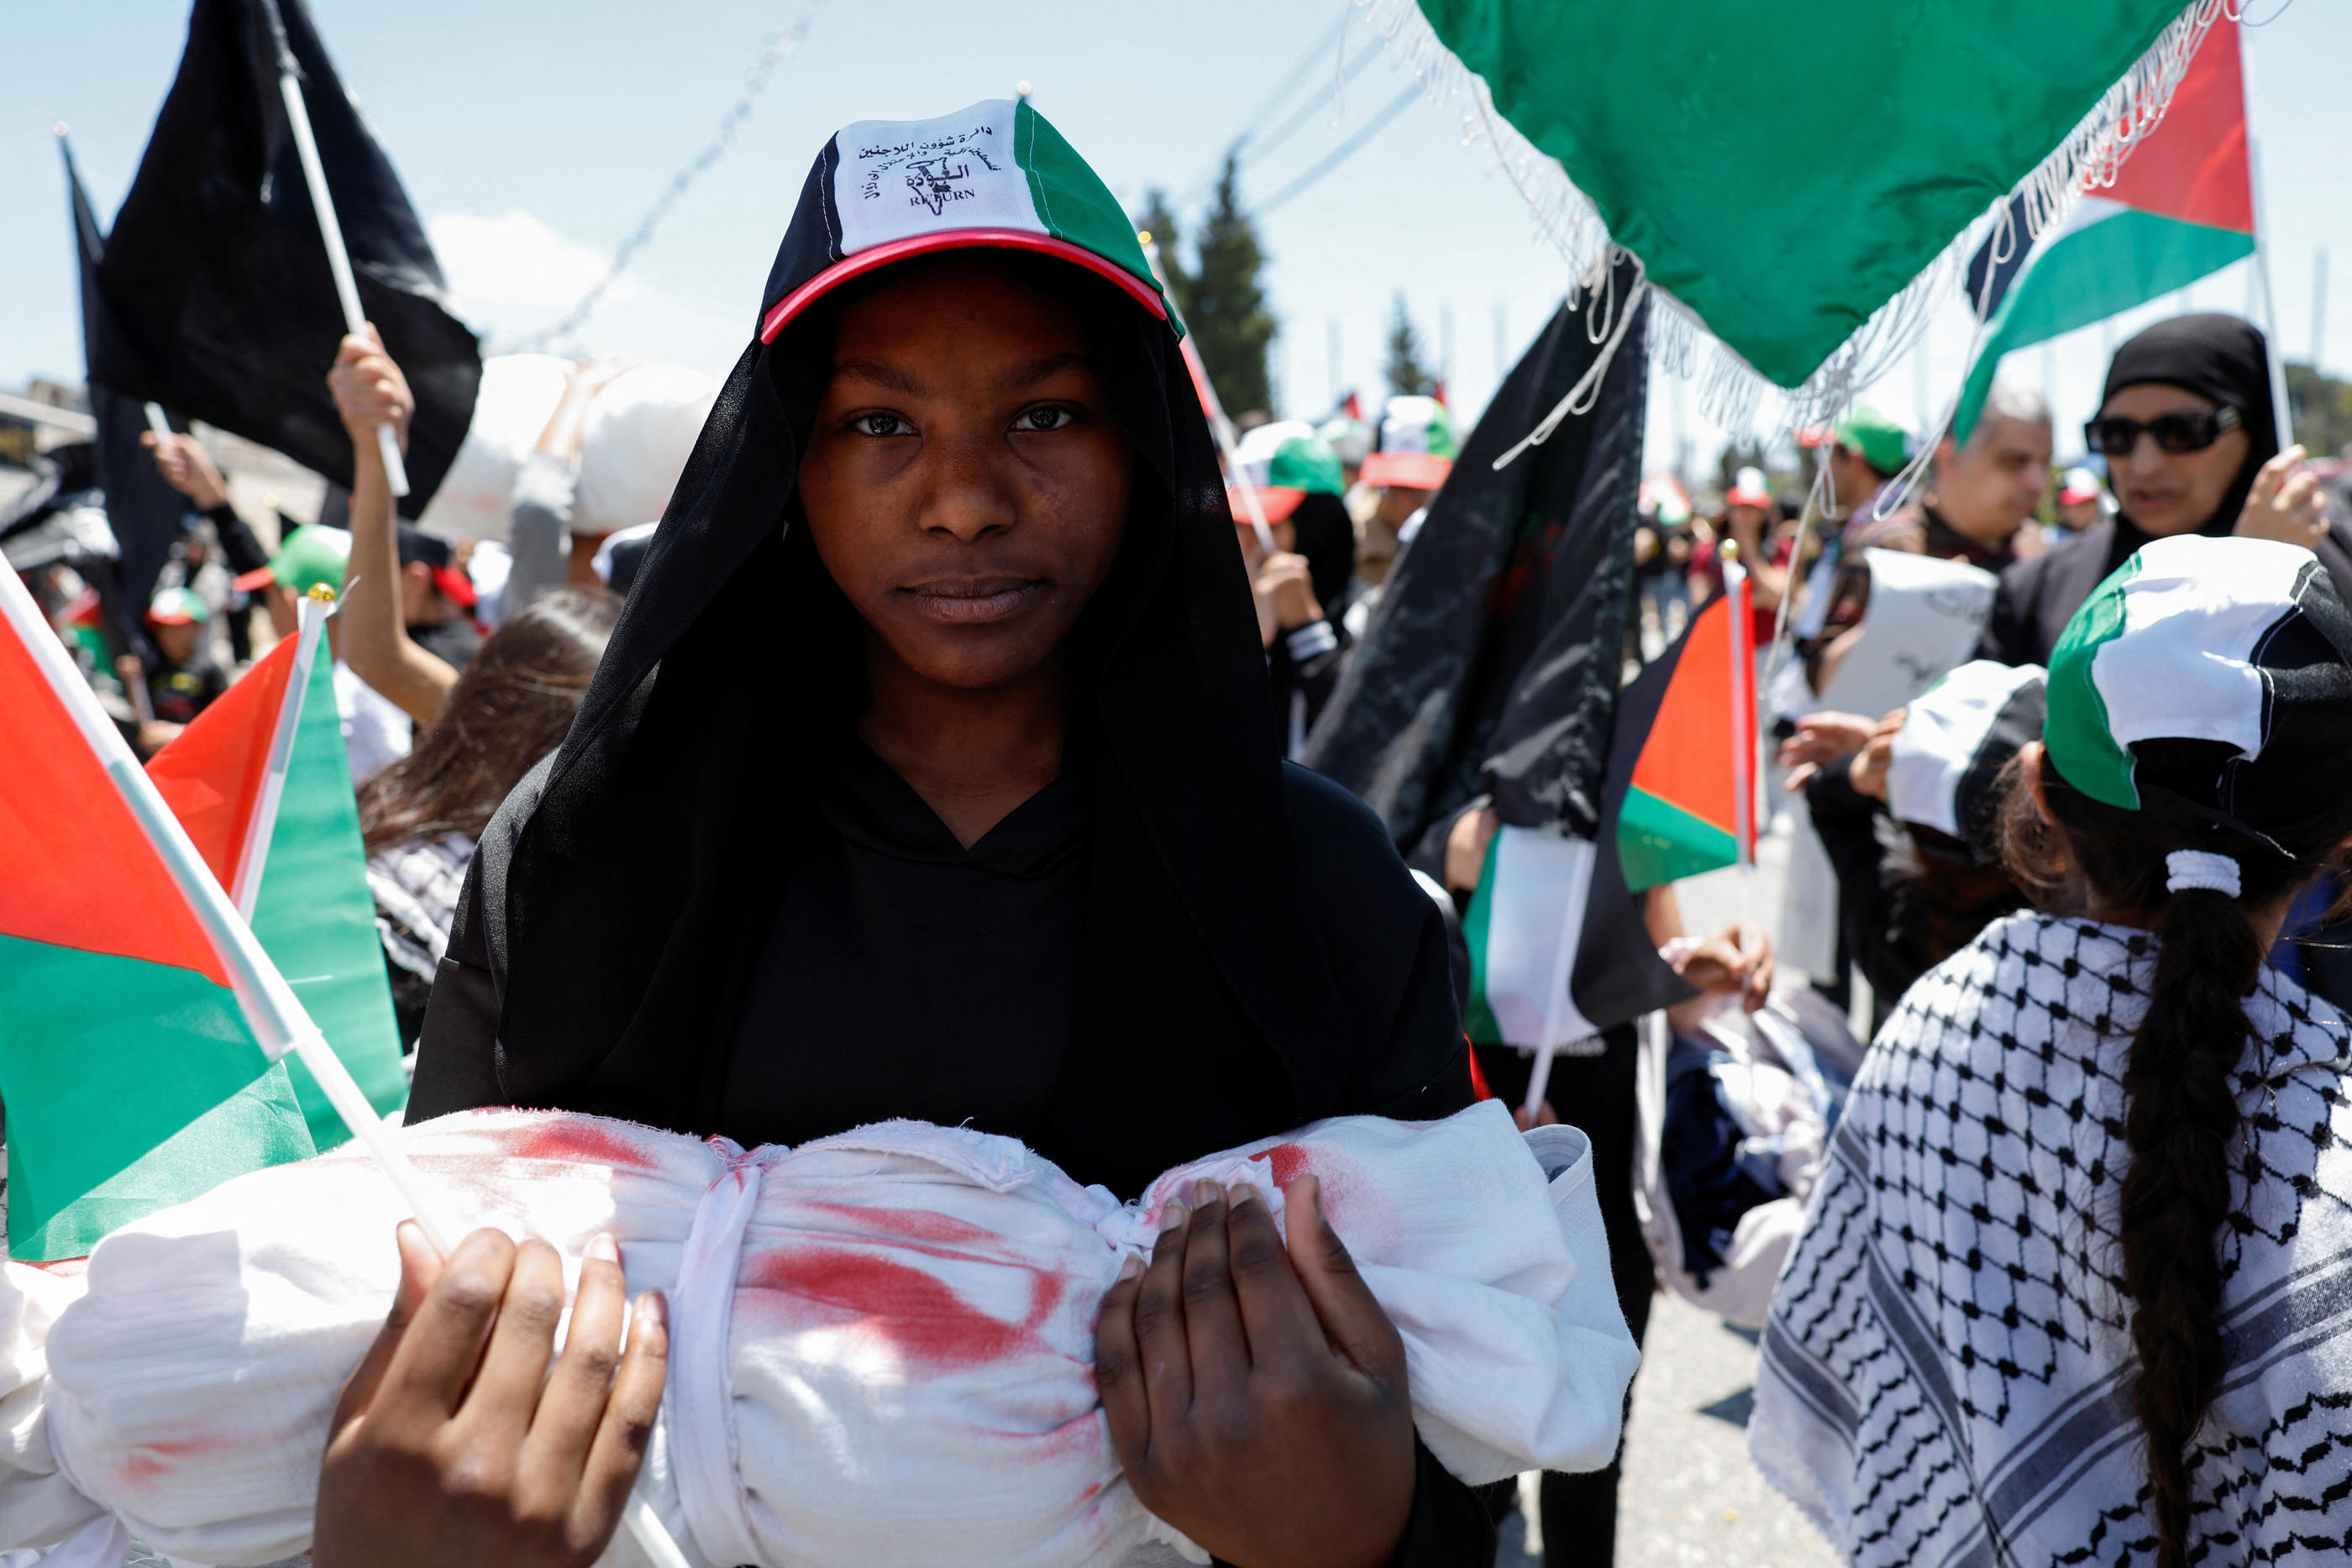 Un Palestinien tient la représentation d'une victime palestinienne lors dune manifestation pour marquer le 76e anniversaire de la Nakba, la « catastrophe ».
REUTERS/Mohamad Torokman